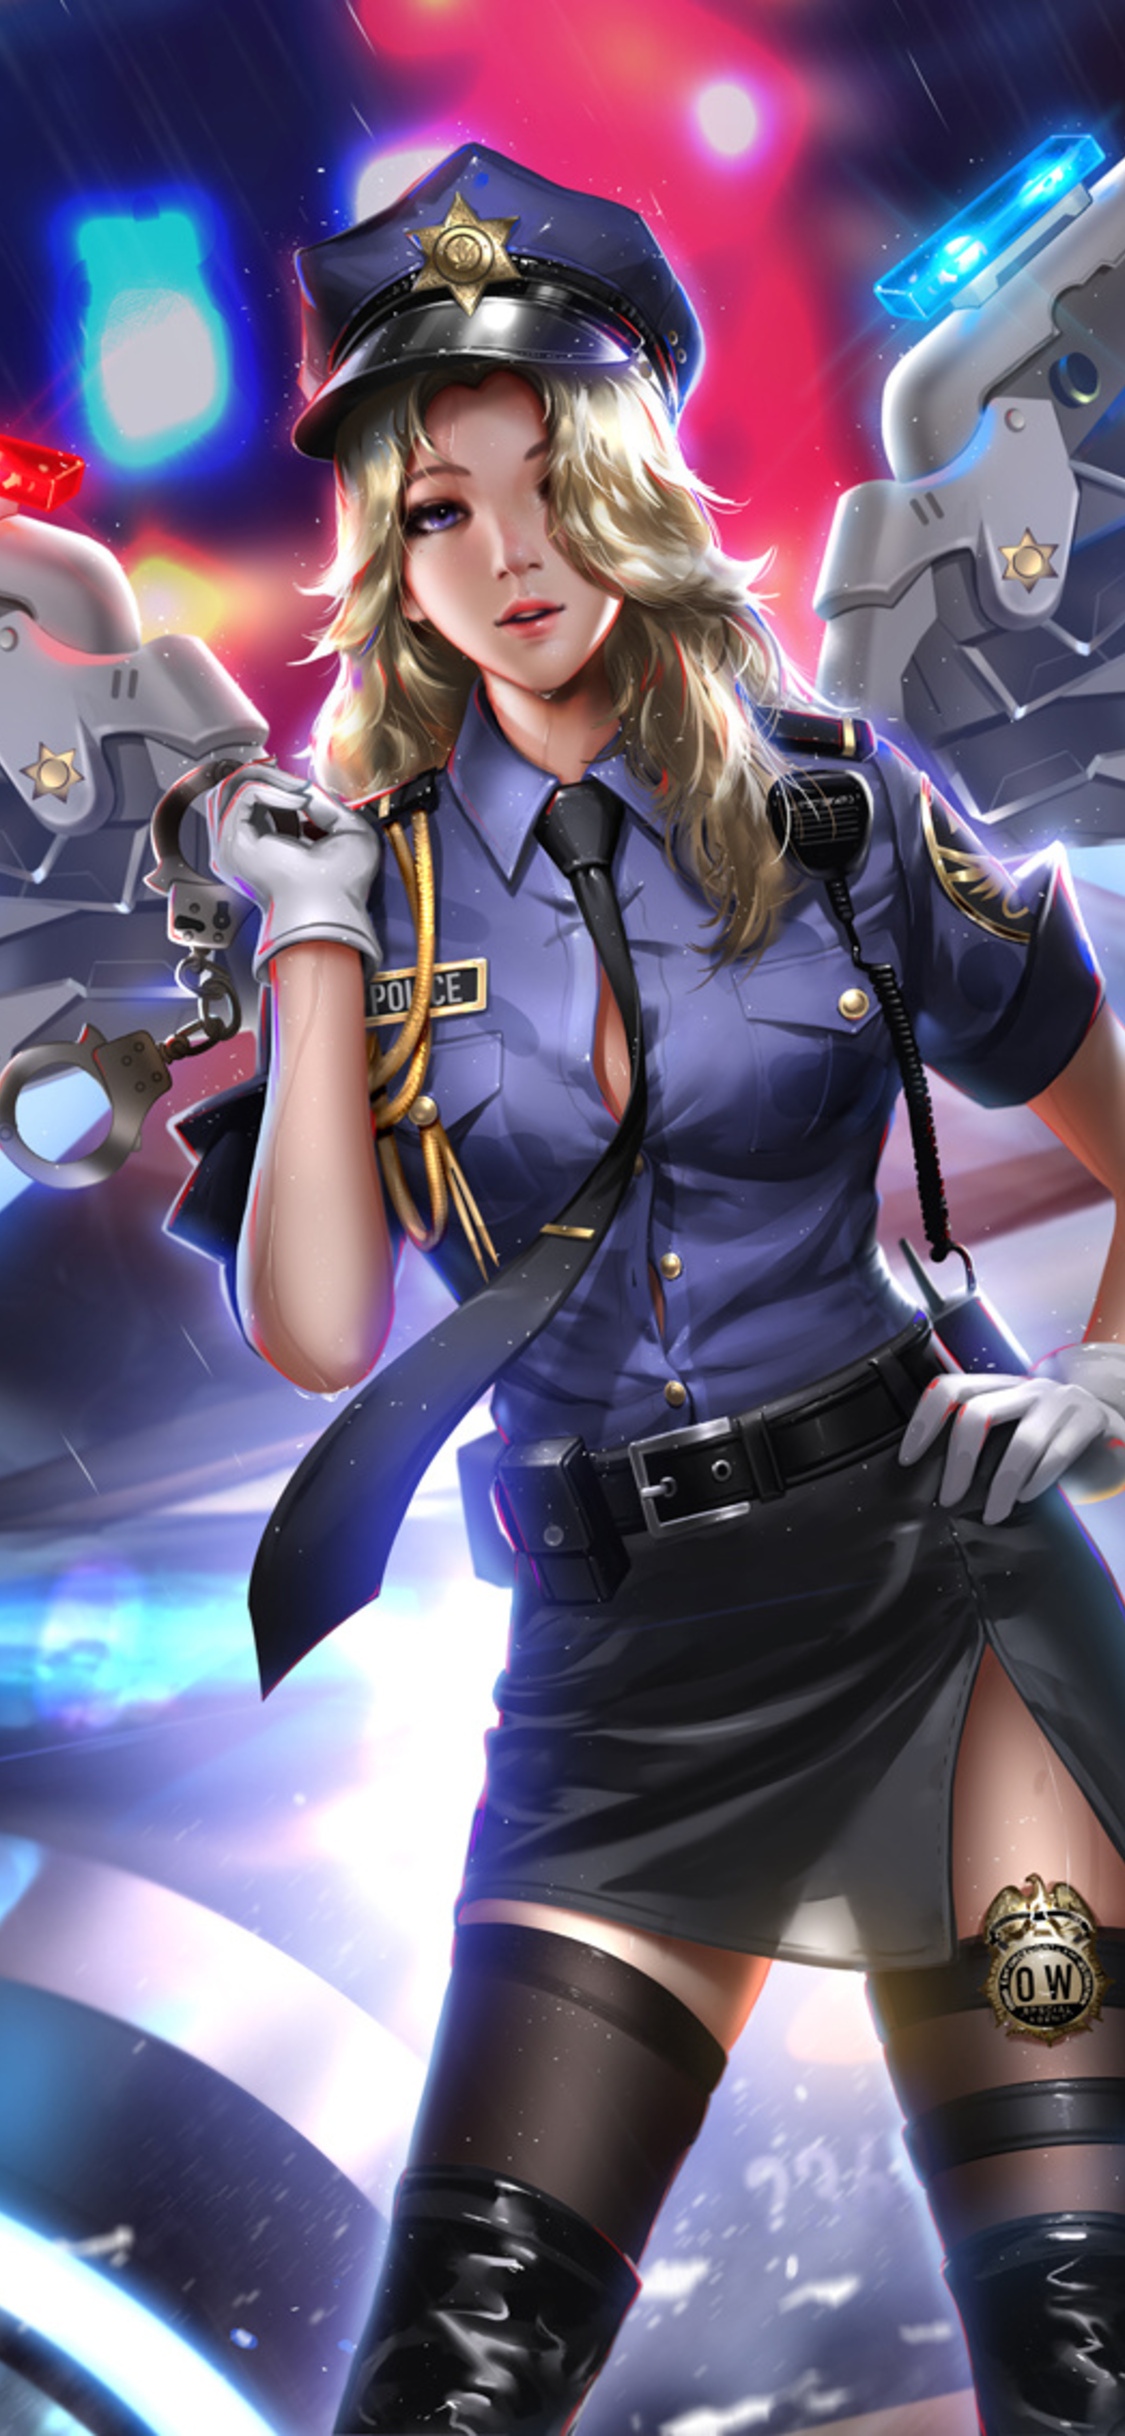 Girl Police - Anime Police